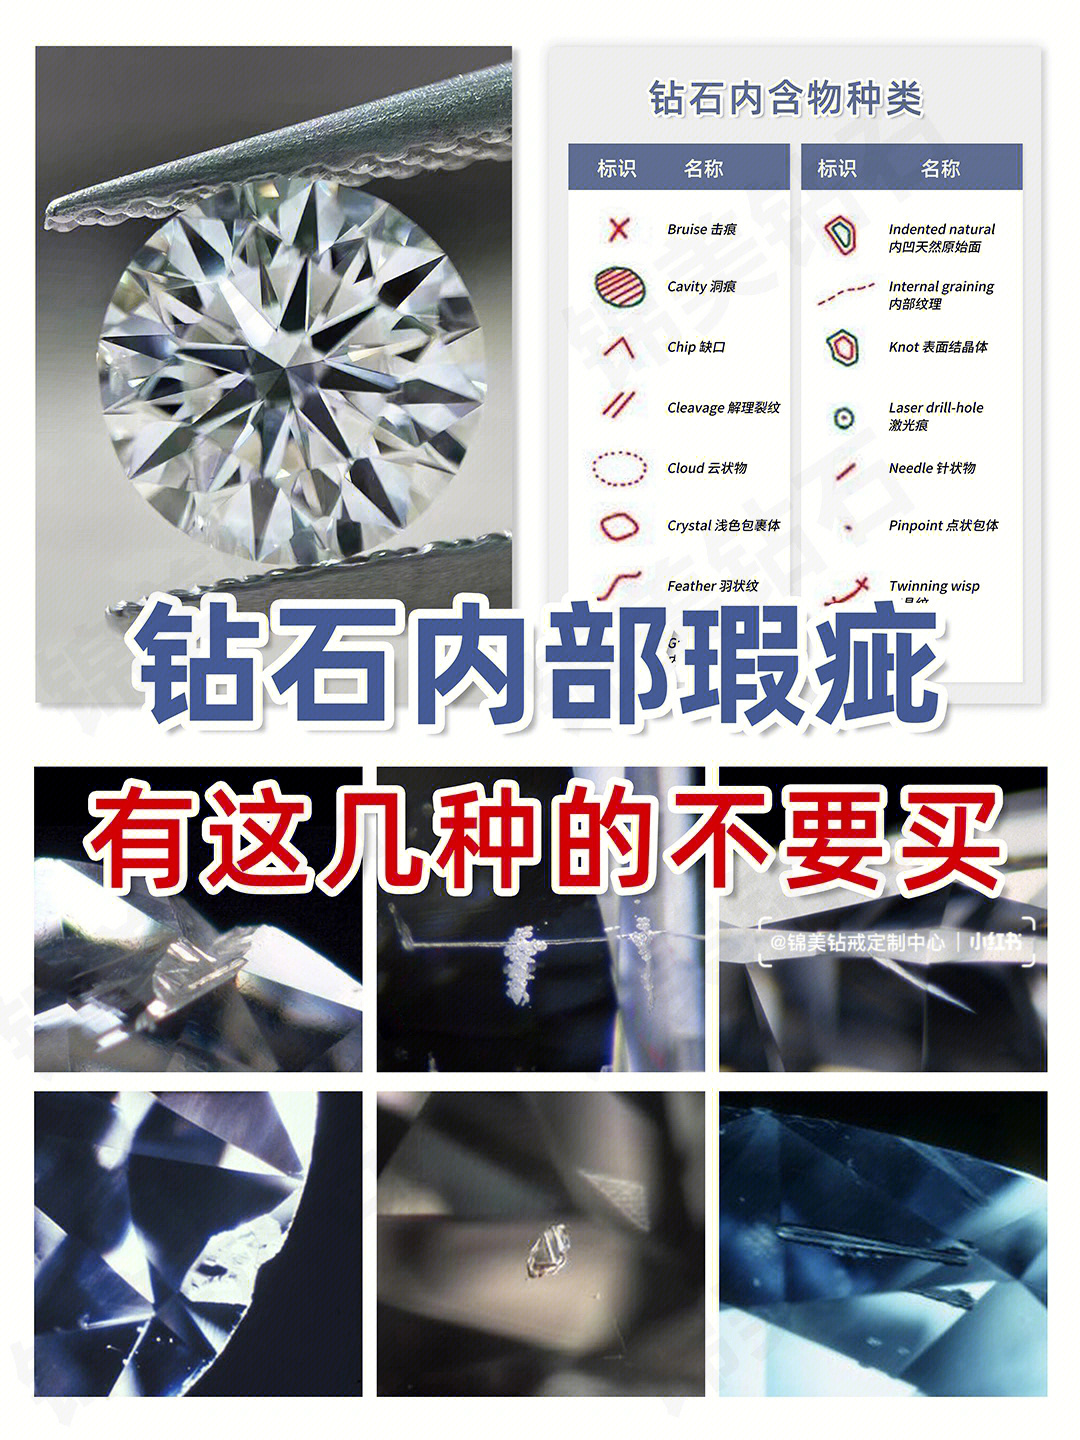 钻石内含物种类及图示图片